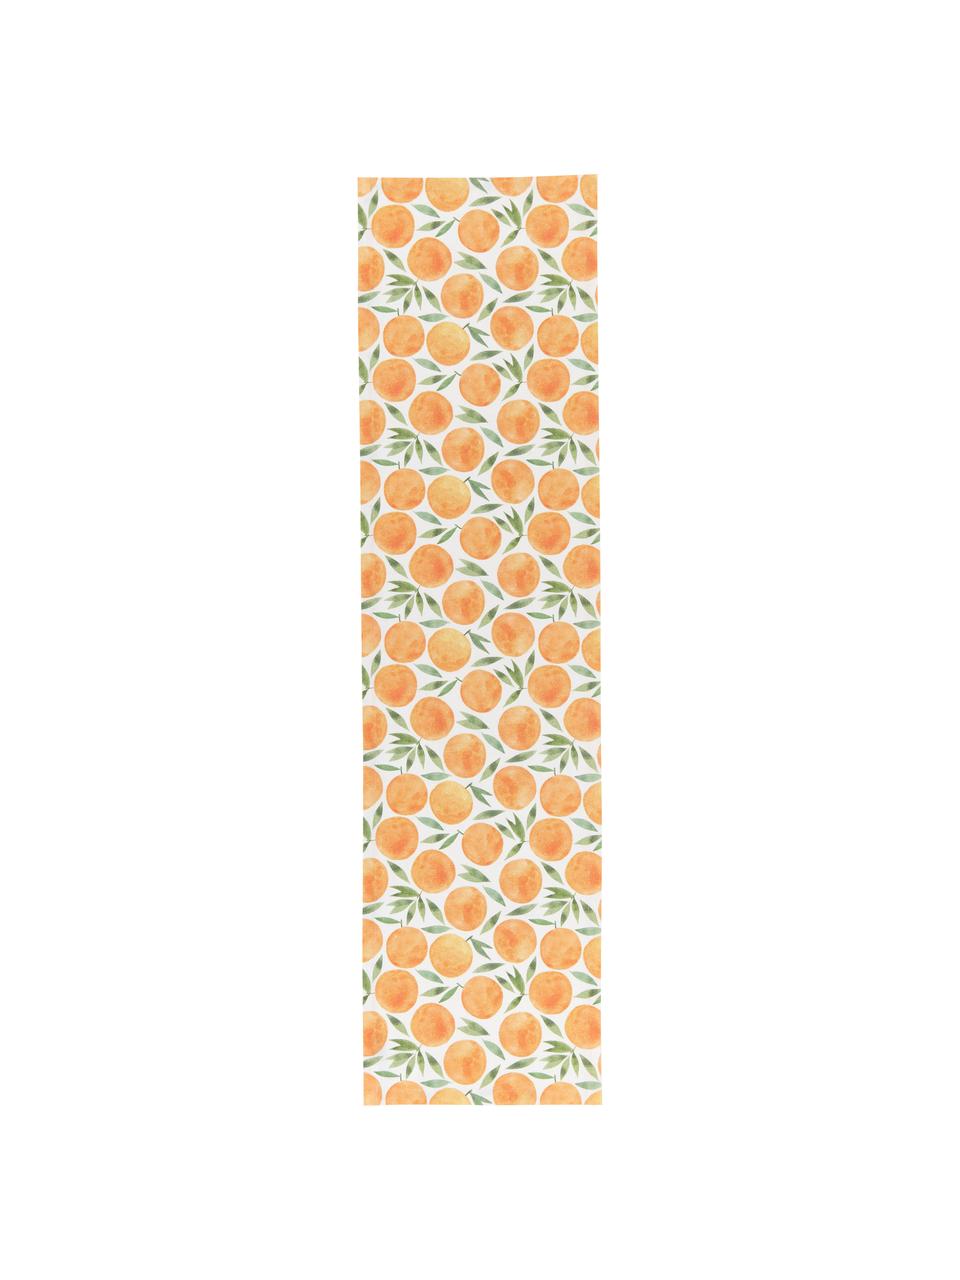 Bieżnik Picnic, 85% bawełna, 15% len, Pomarańczowy, zielony, biały, S 40 x D 145 cm